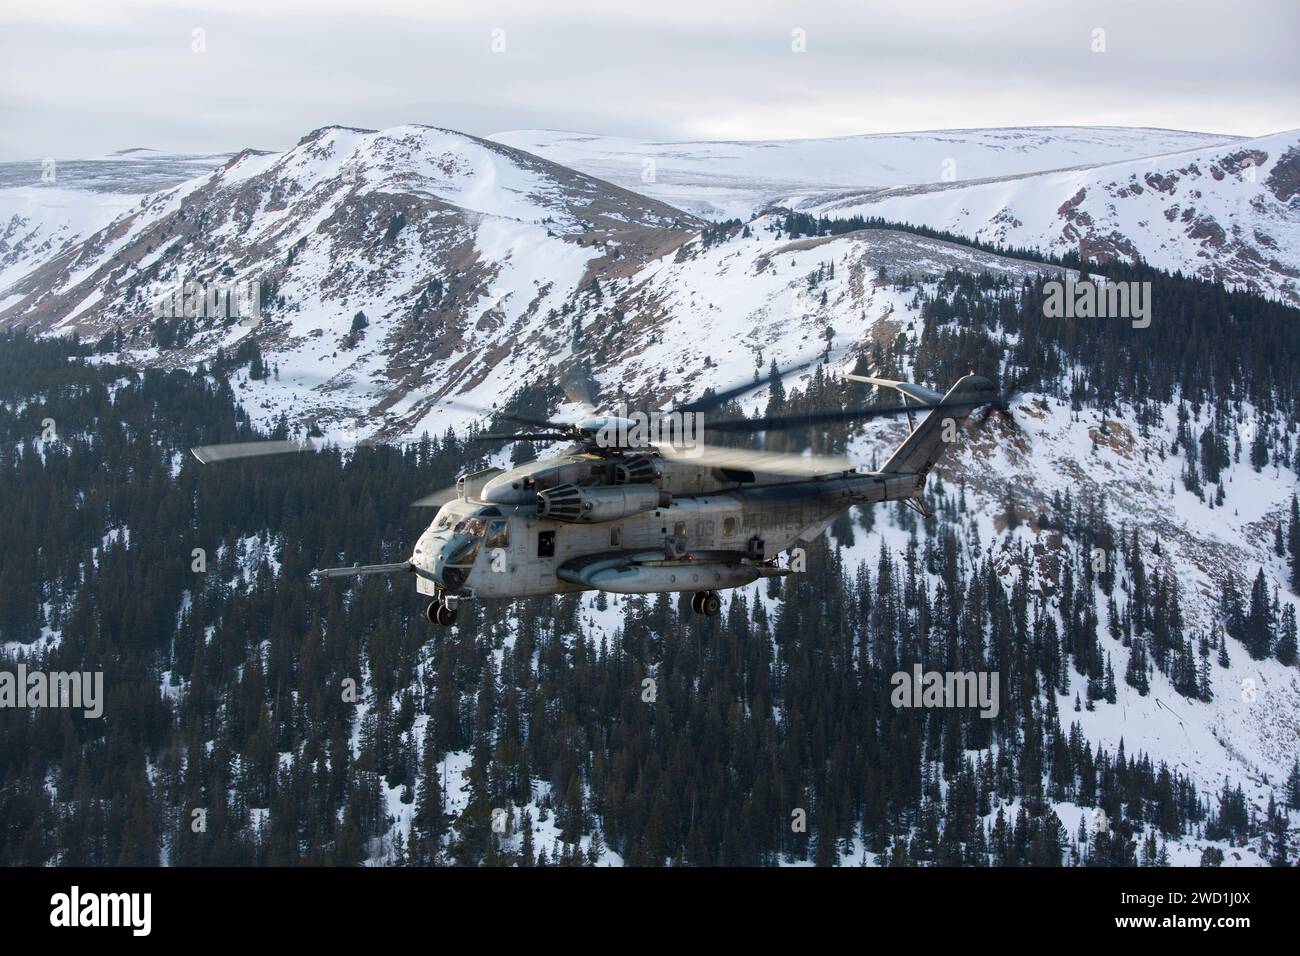 Ein Superhengst des U.S. Marine Corps CH-53E fliegt über die Rocky Mountains. Stockfoto